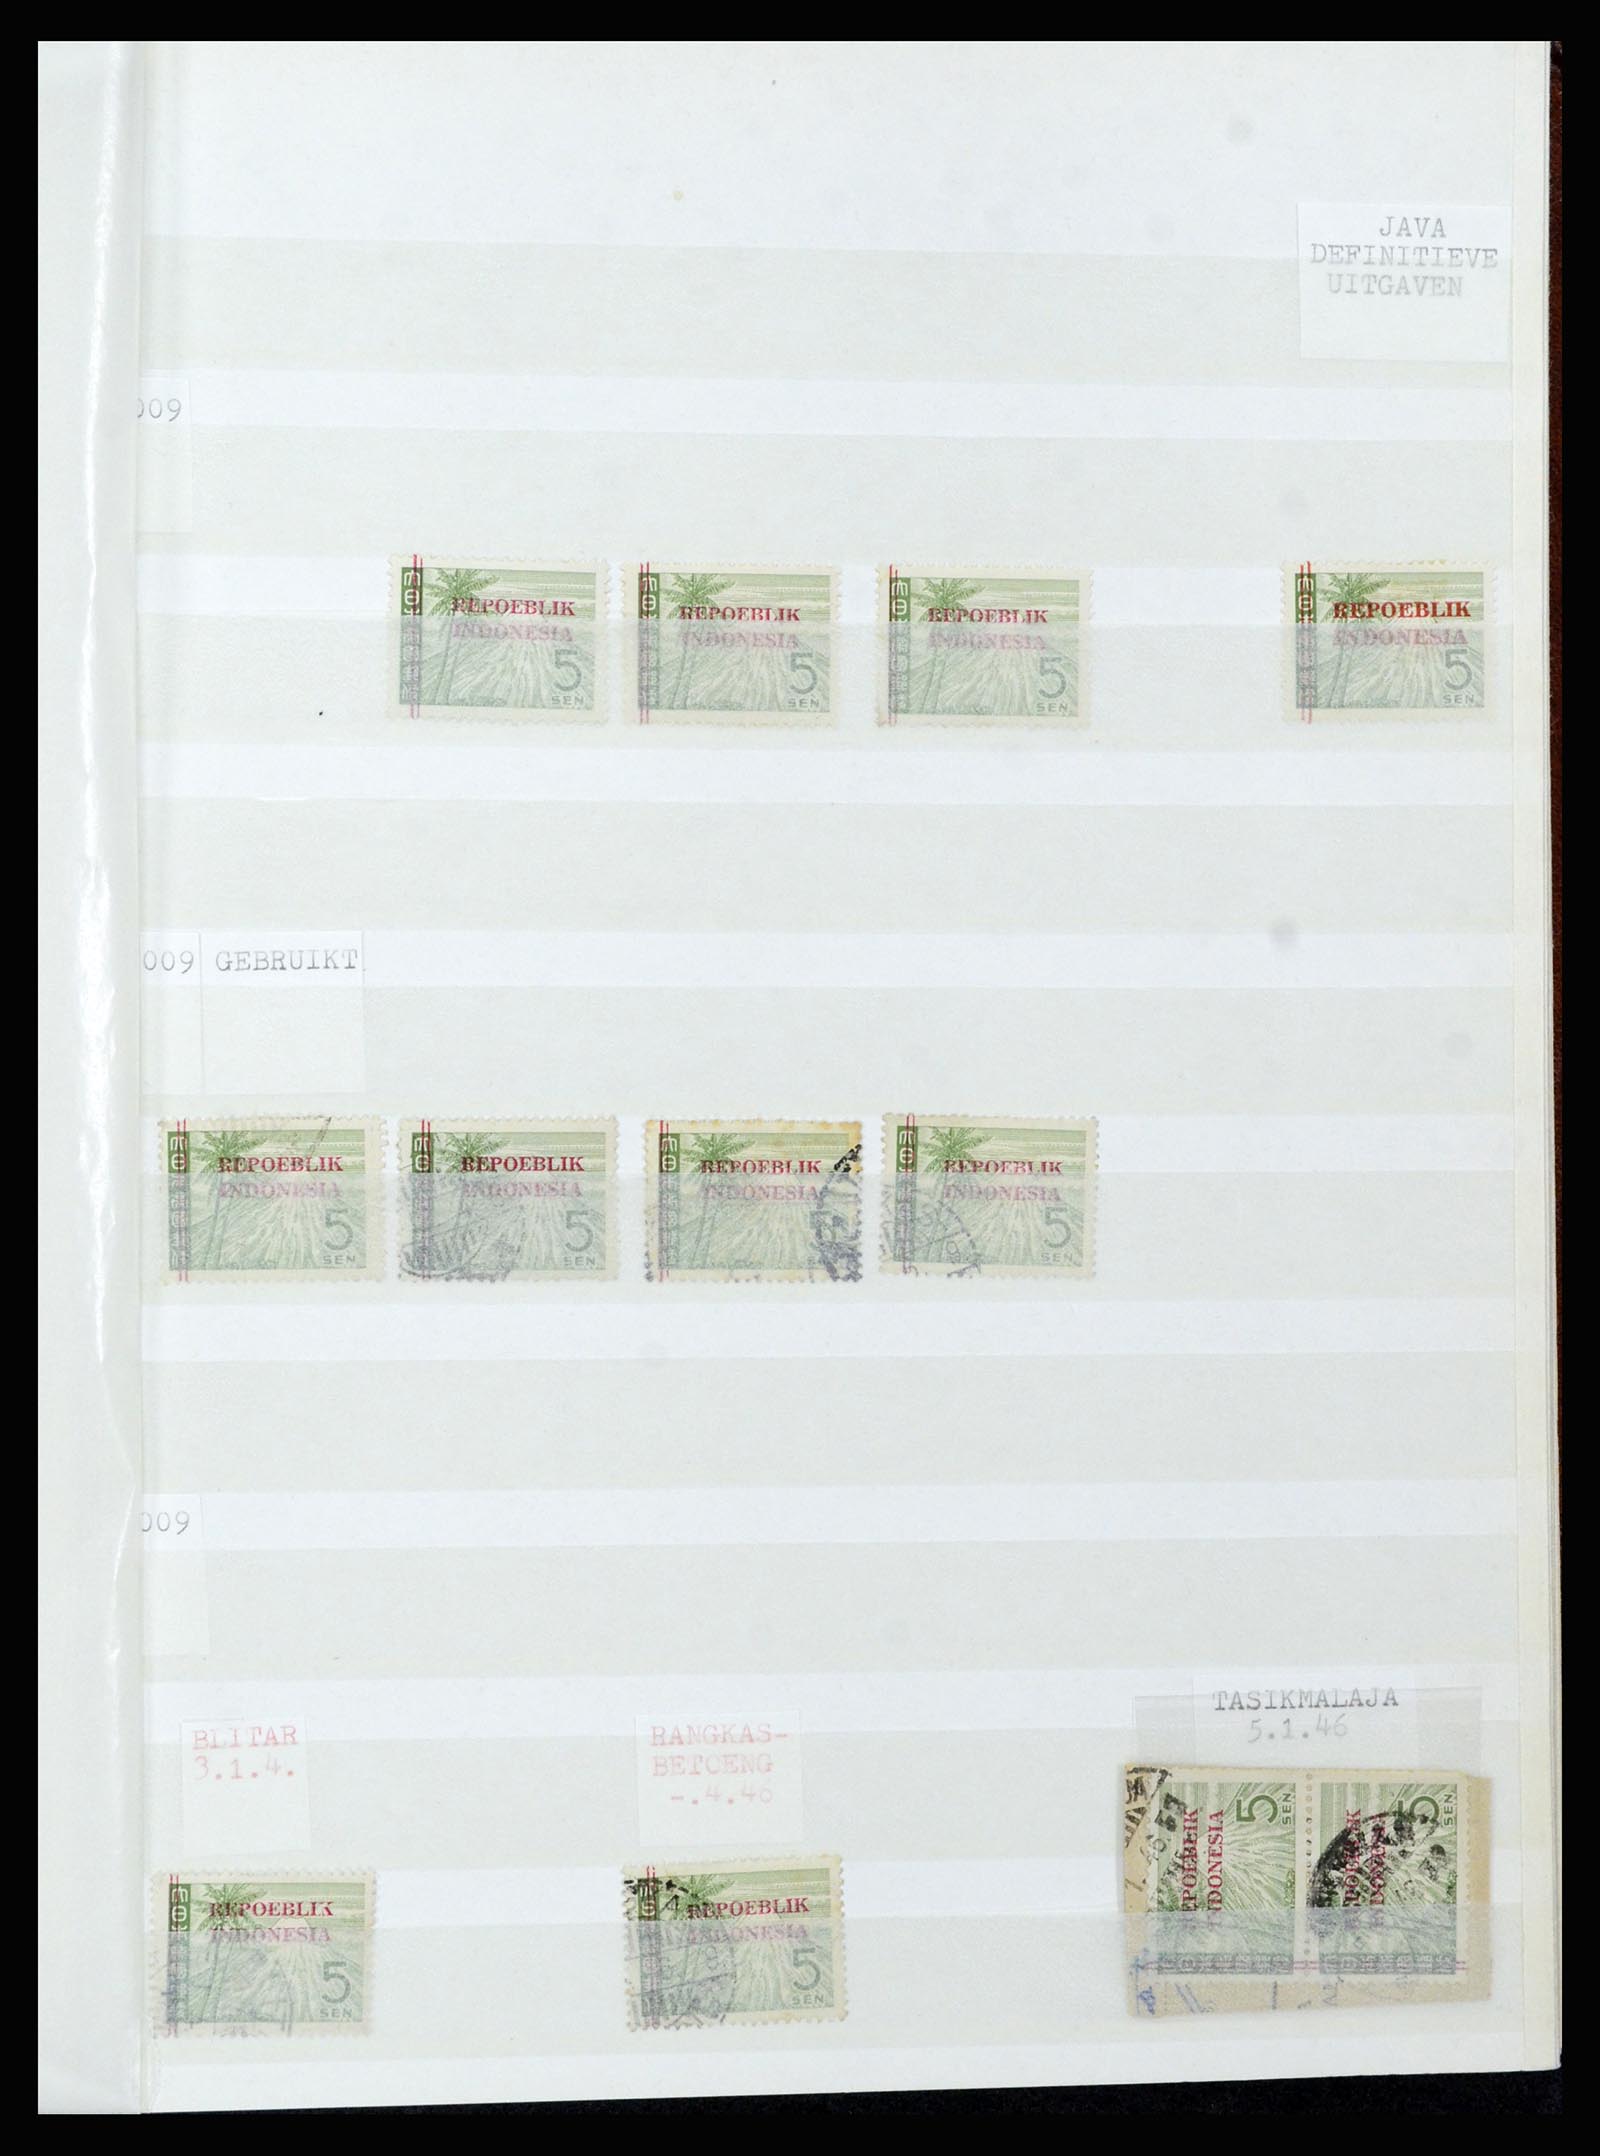 36742 314 - Stamp collection 36742 Dutch Indies interim period 1945-1949.